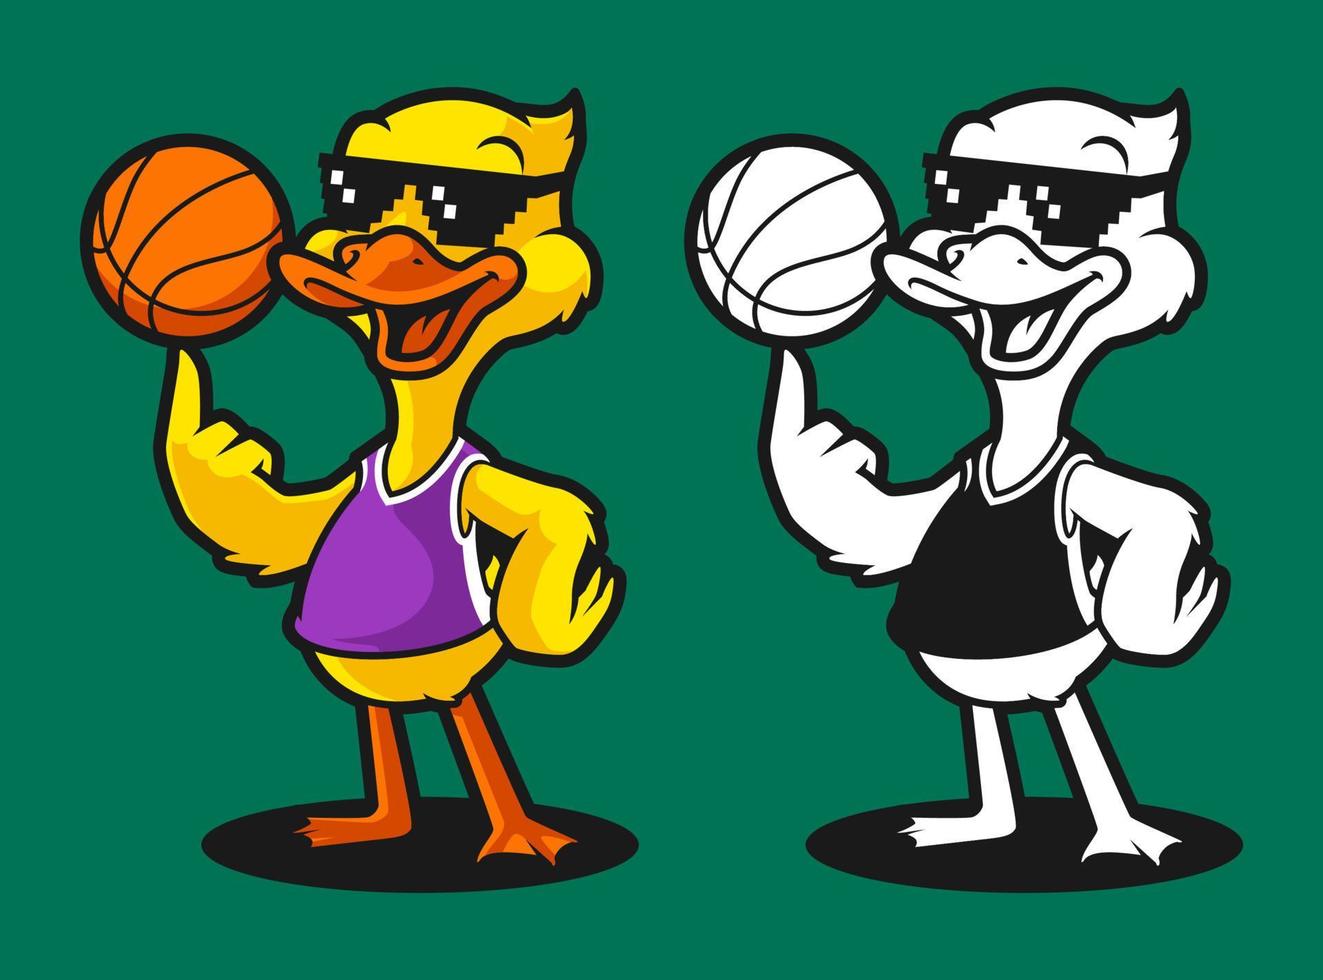 Pato basquetebol desenho animado personagem mascote vetor